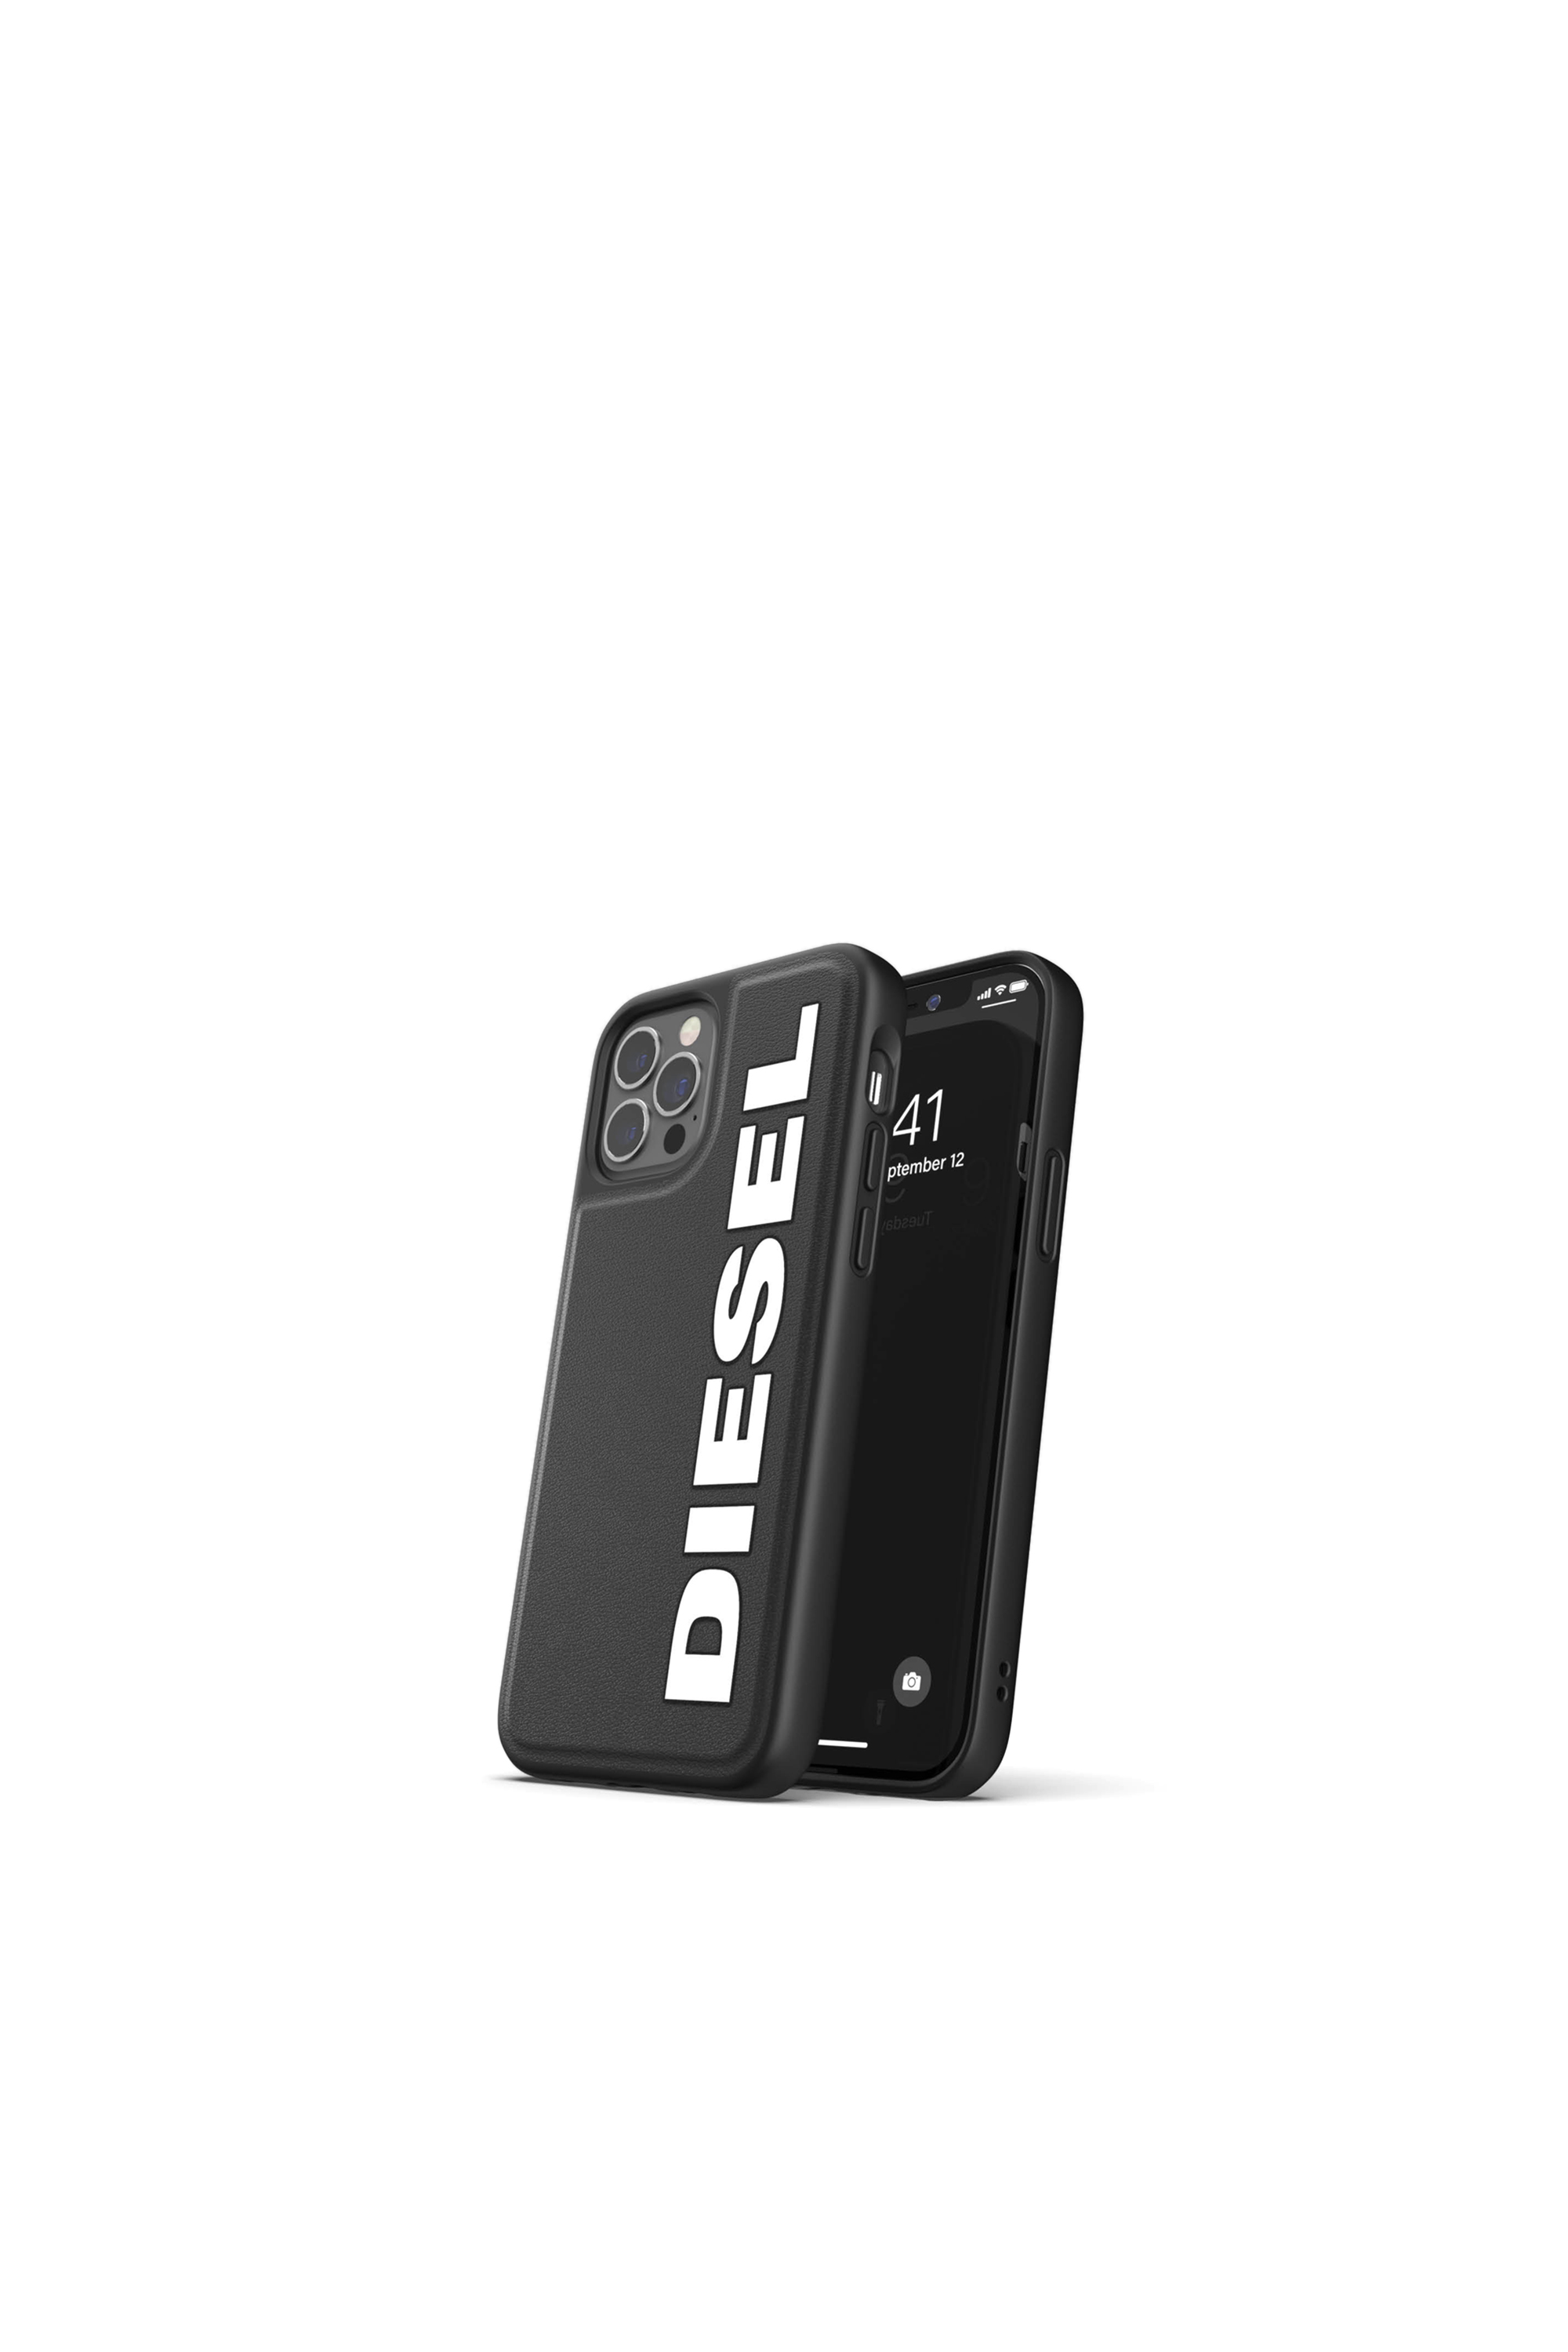 Diesel - 42492, Black - Image 3